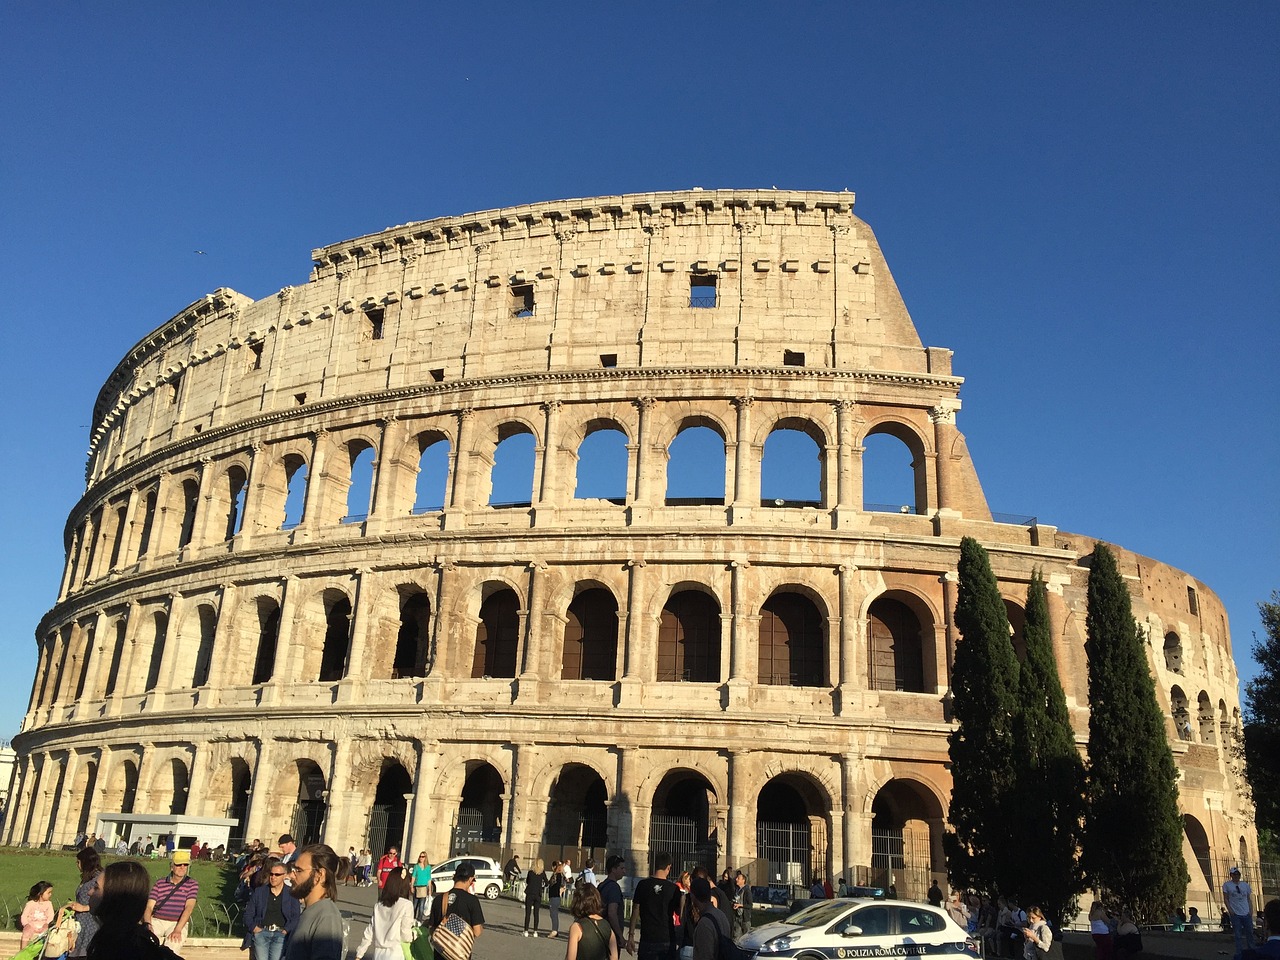 Het Colosseum is het symbool van de stad Rome